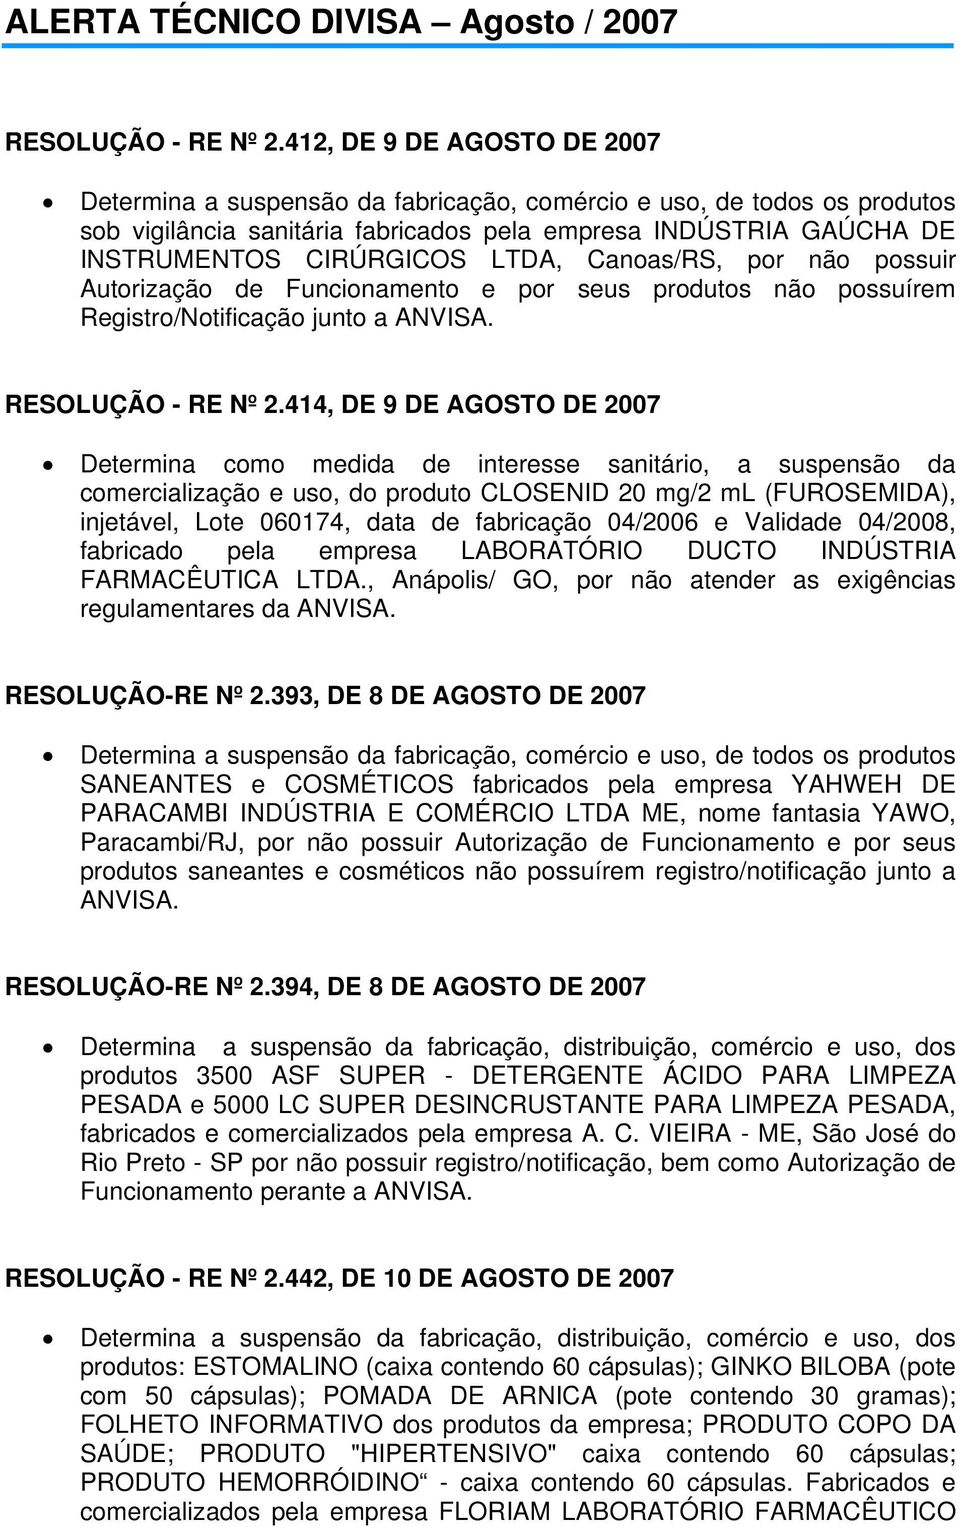 LTDA, Canoas/RS, por não possuir Autorização de Funcionamento e por seus produtos não possuírem Registro/Notificação junto a ANVISA.